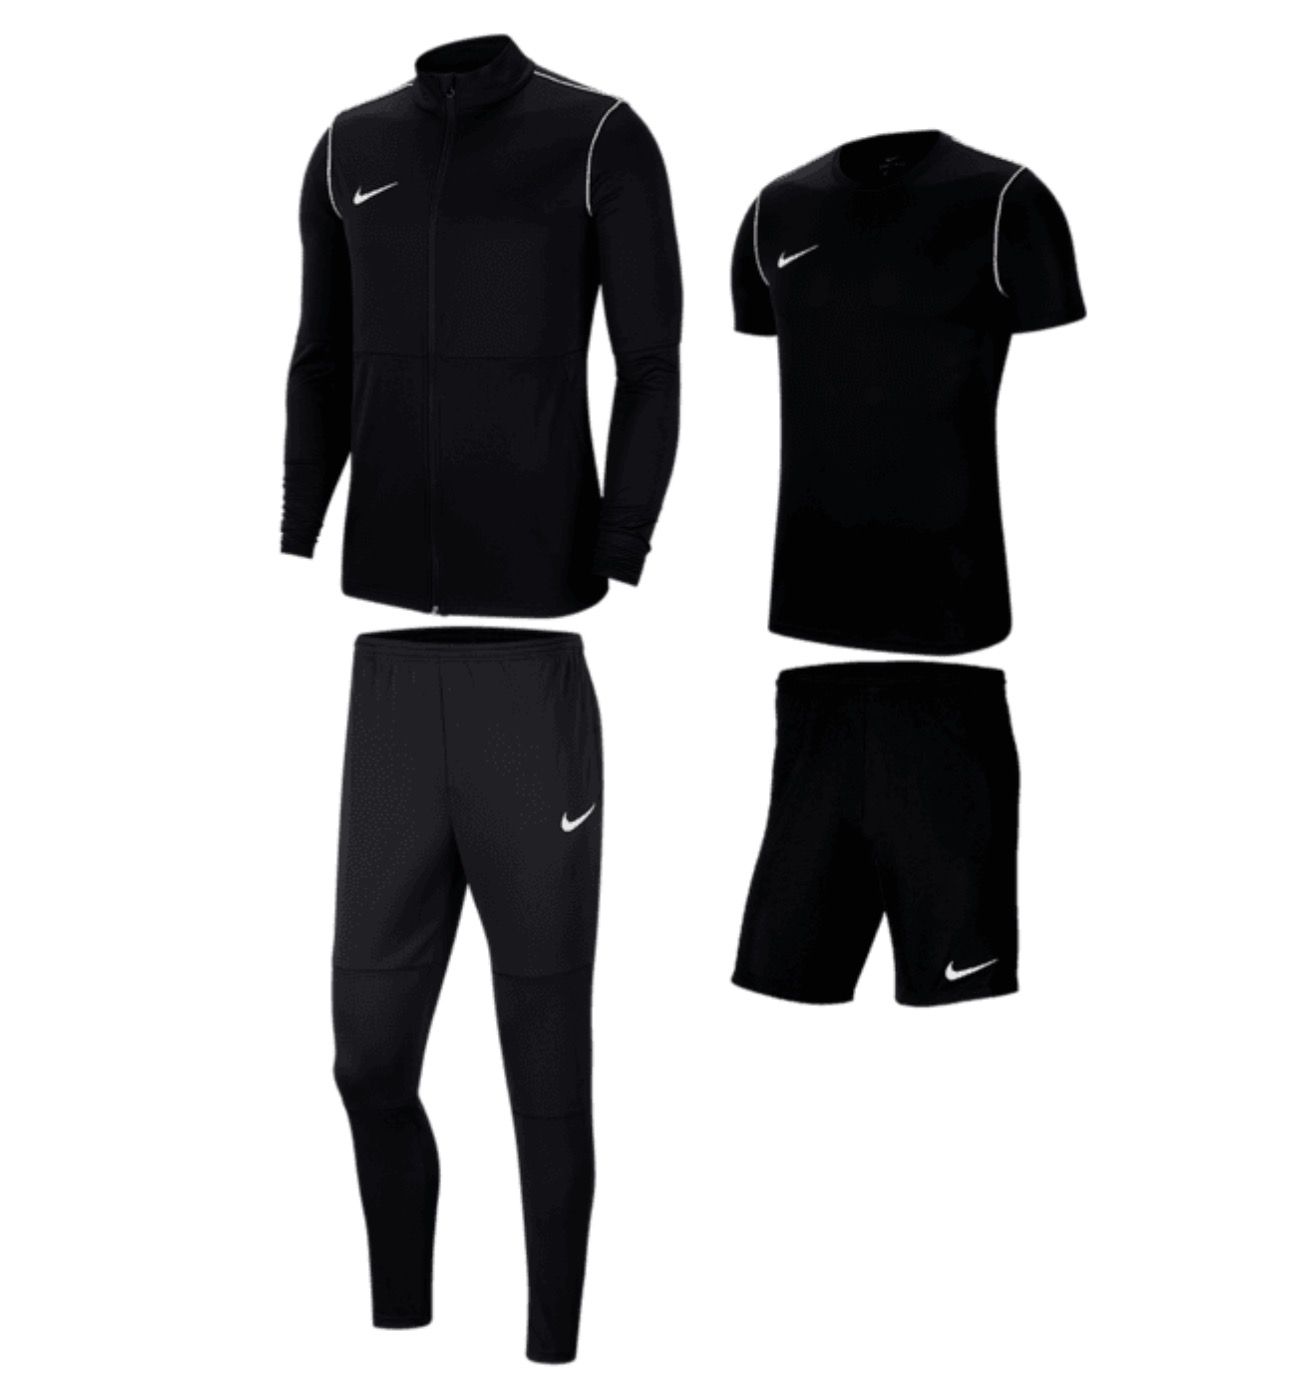 Nike Park 20 Trainings-Set (Jacke, Shirt, Short, Hose) für 44,97€ (statt 70€)